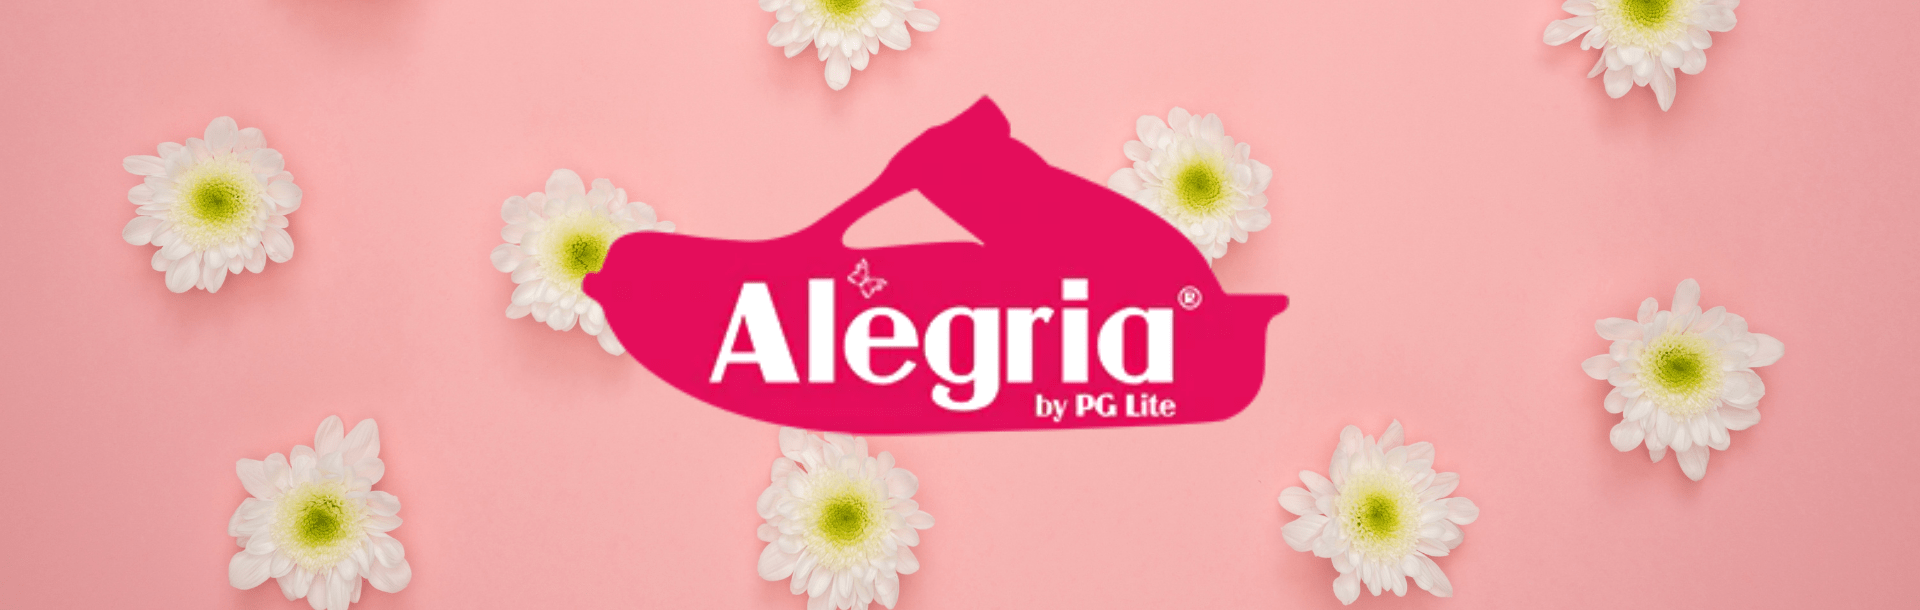 Alegira Shoes